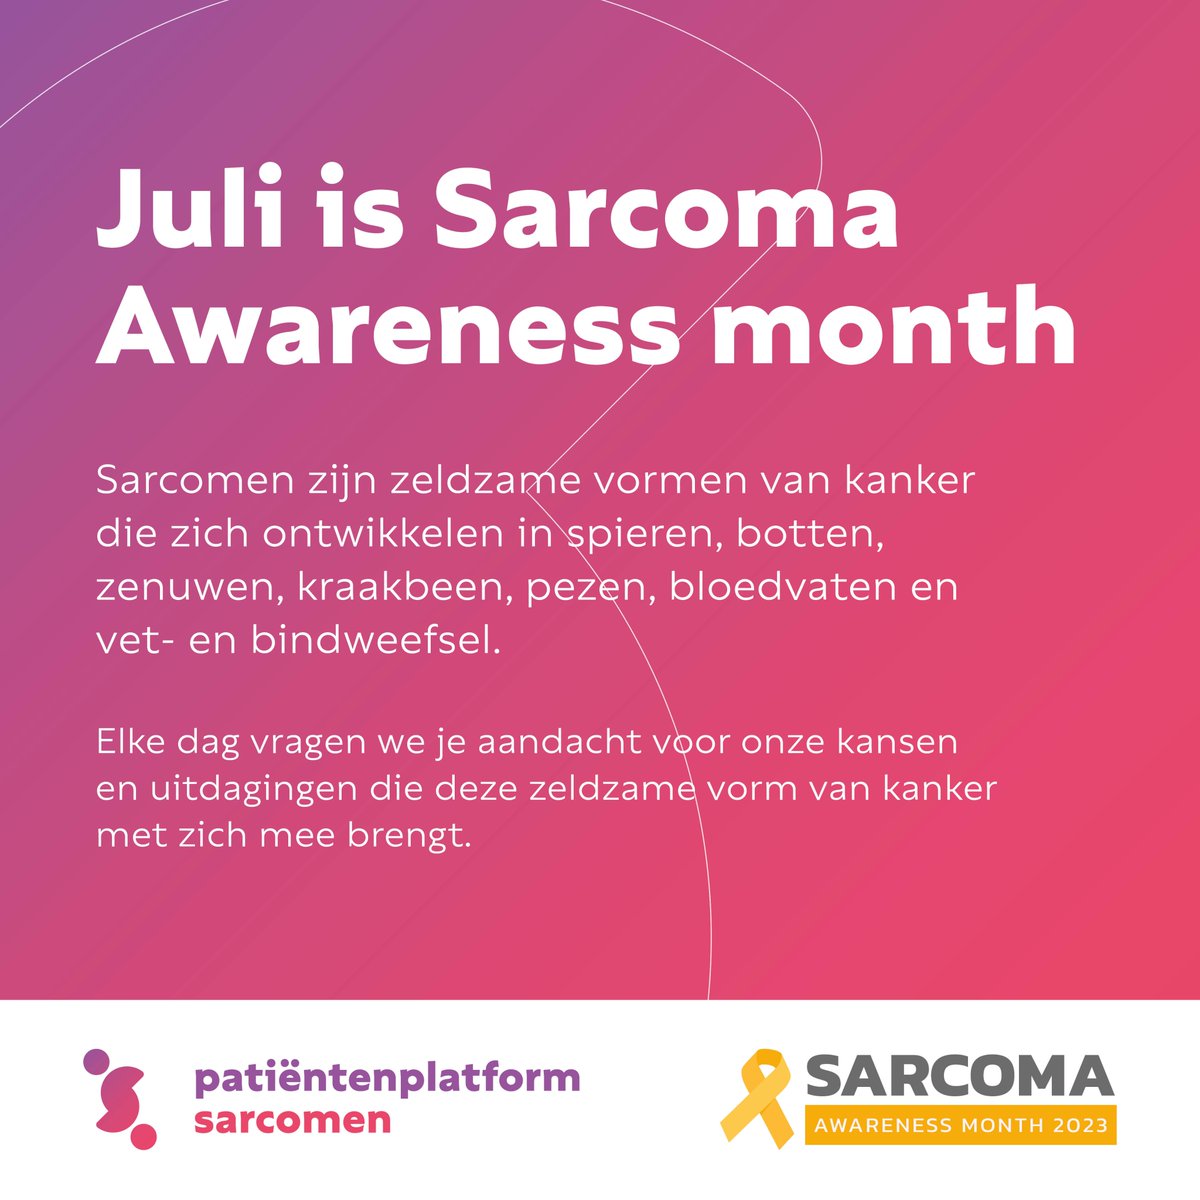 Sarcomen: zeldzaam, divers, moeilijk te herkennen en vaak moeilijk te behandelen. Elke juli vragen wij jullie aandacht voor sarcomen om ervoor te zorgen dat mensen met deze zeldzame vorm van kanker toch de best mogelijke kansen krijgen. Op naar beter! #sarcomaawarenessmonth23